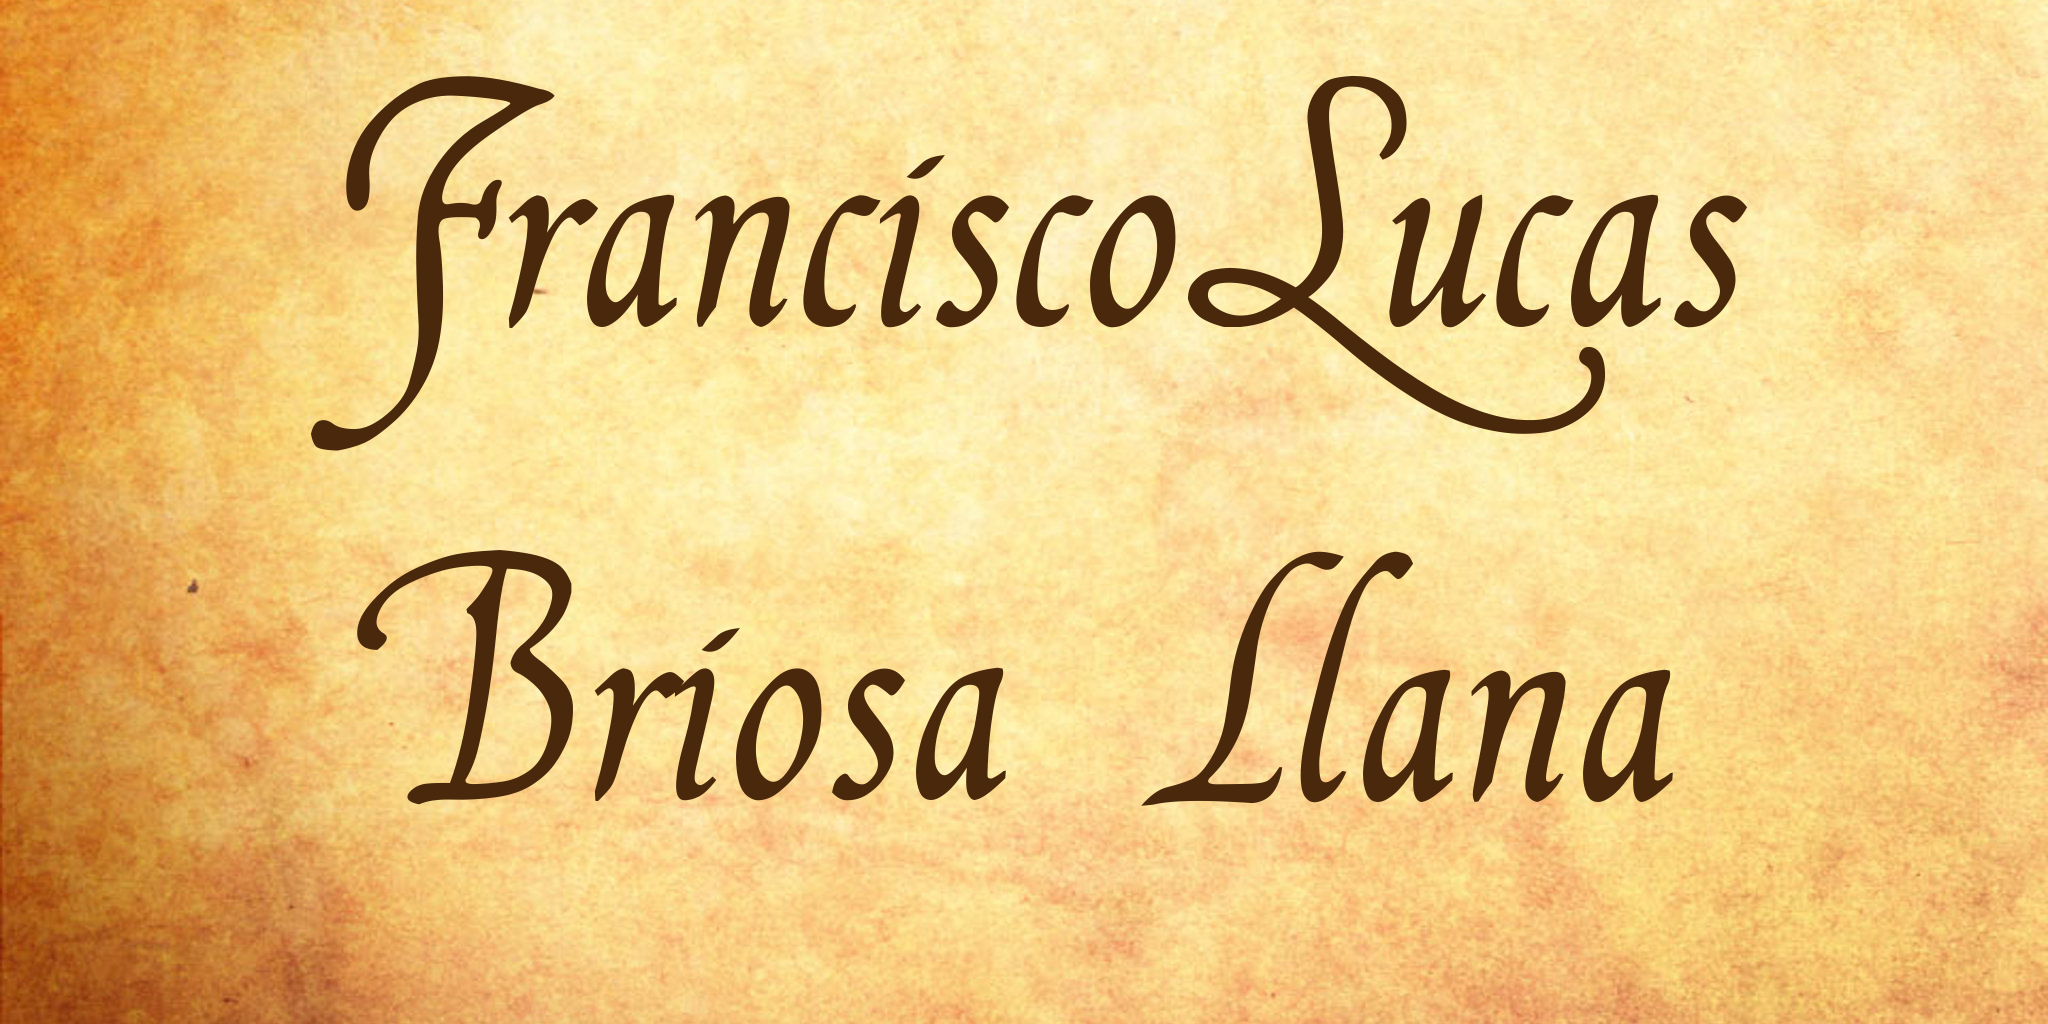 Francisco Lucas